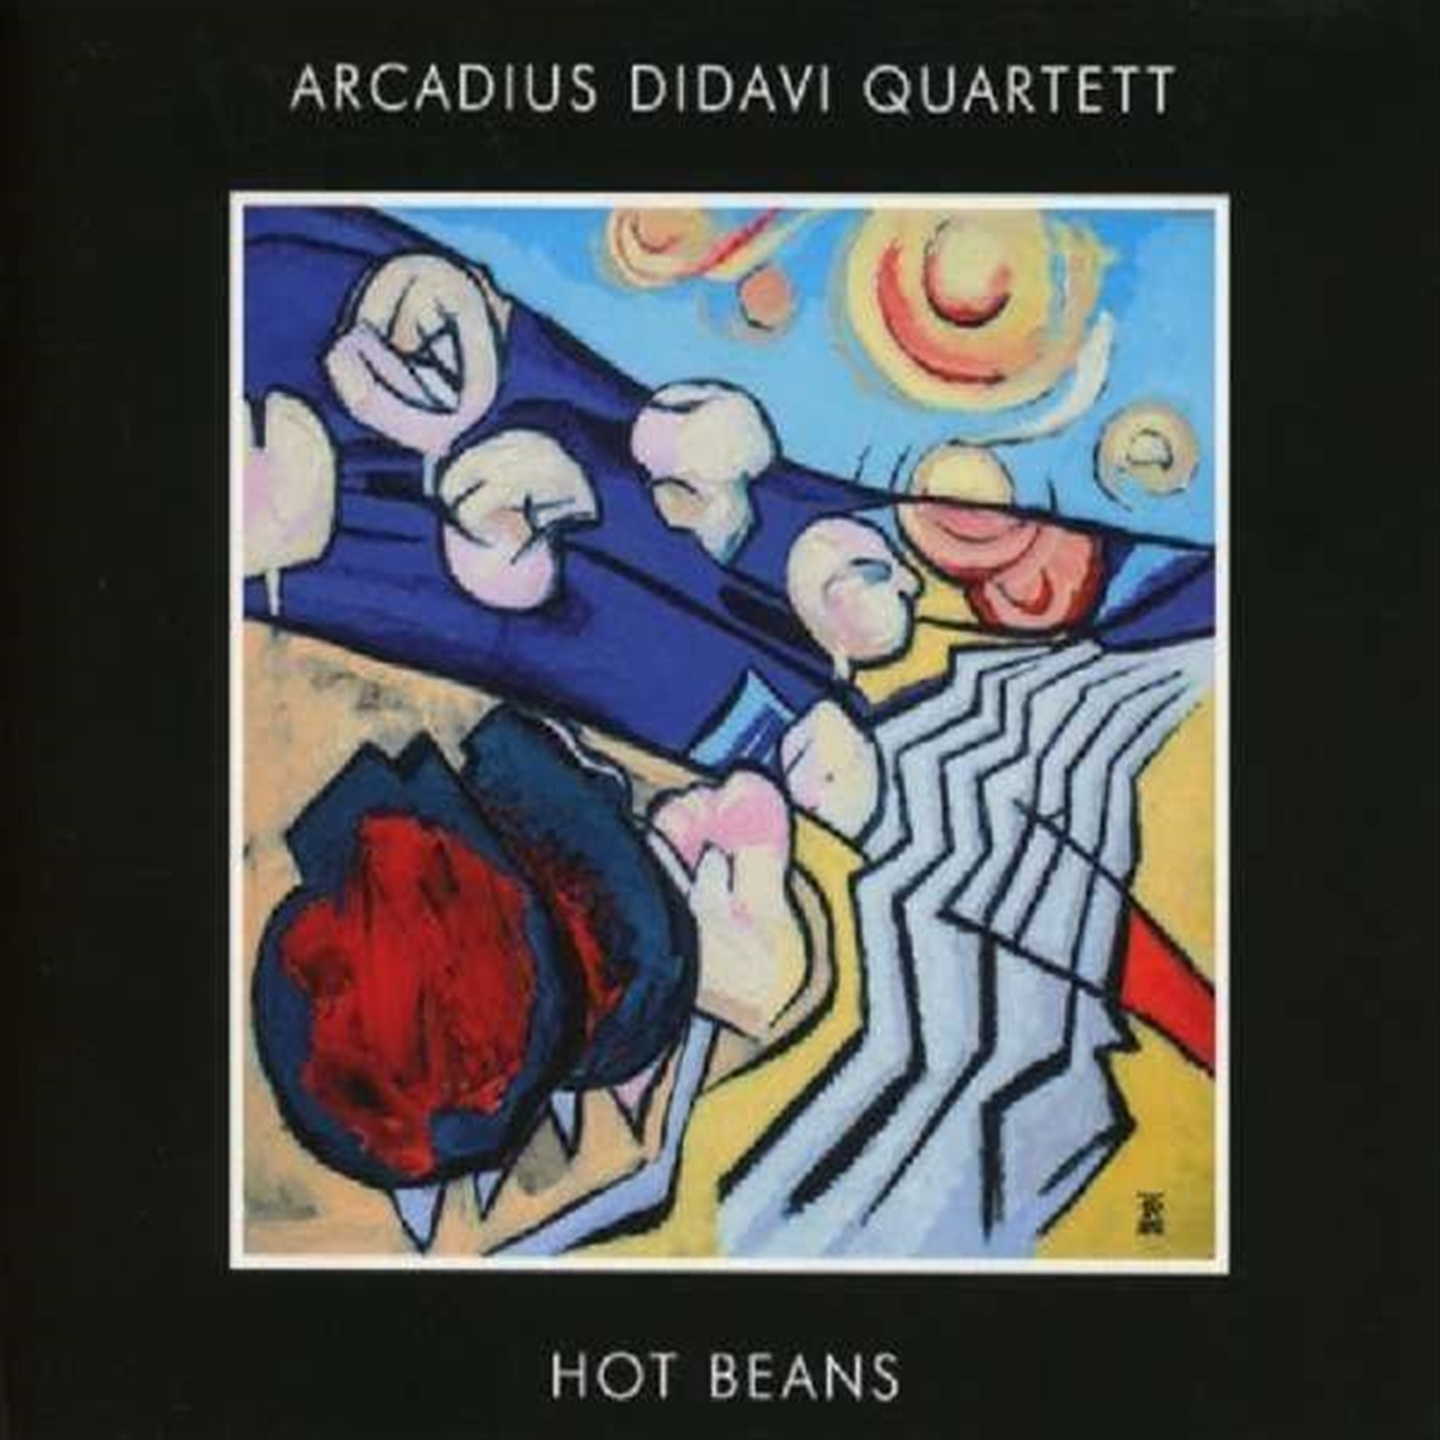 Arcadius Didavi Quartet - Hot Beans - Foto 1 di 1